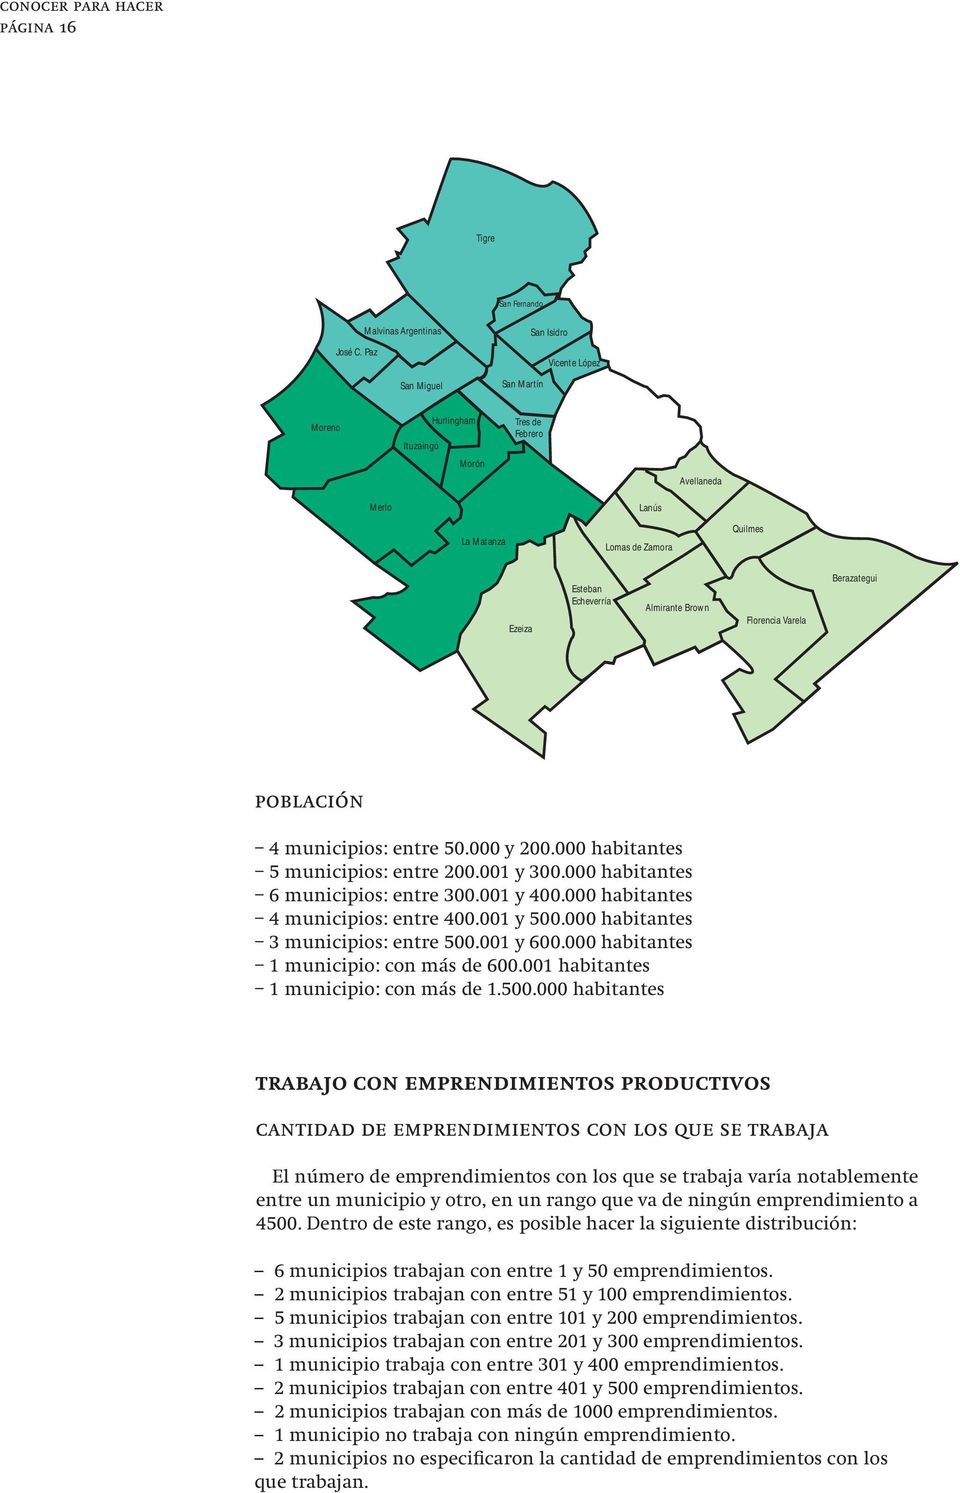 Brown Florencia Varela Berazategui población 4 municipios: entre 50.000 y 200.000 habitantes 5 municipios: entre 200.001 y 300.000 habitantes 6 municipios: entre 300.001 y 400.